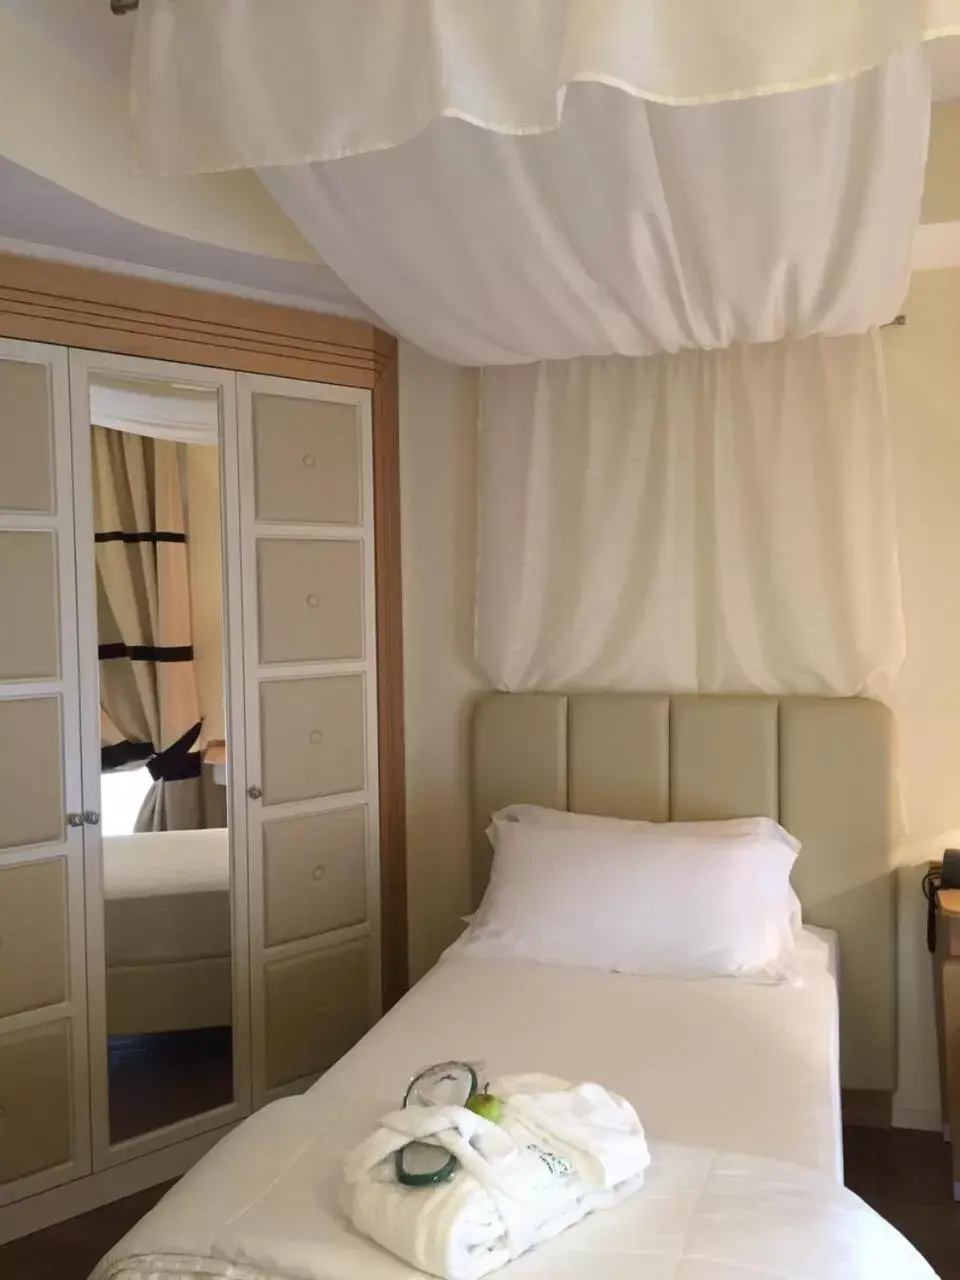 Single Room with Balcony in Erbavoglio Hotel